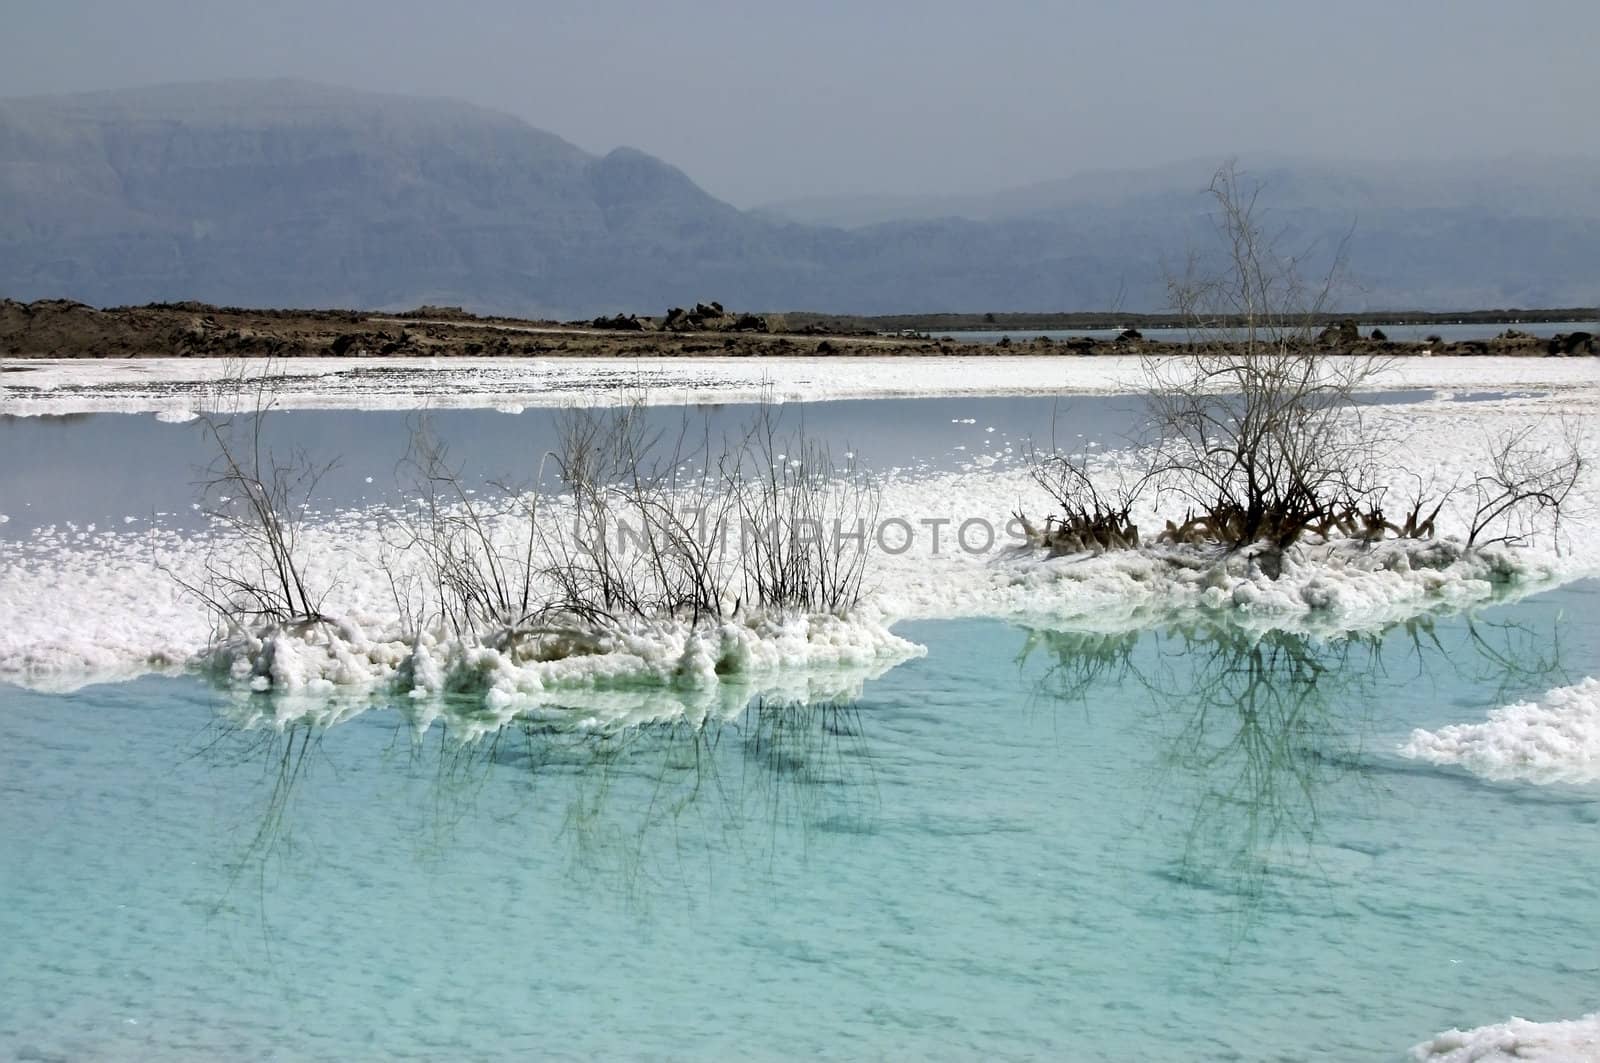 salt deposits in the Dead Sea by irisphoto4